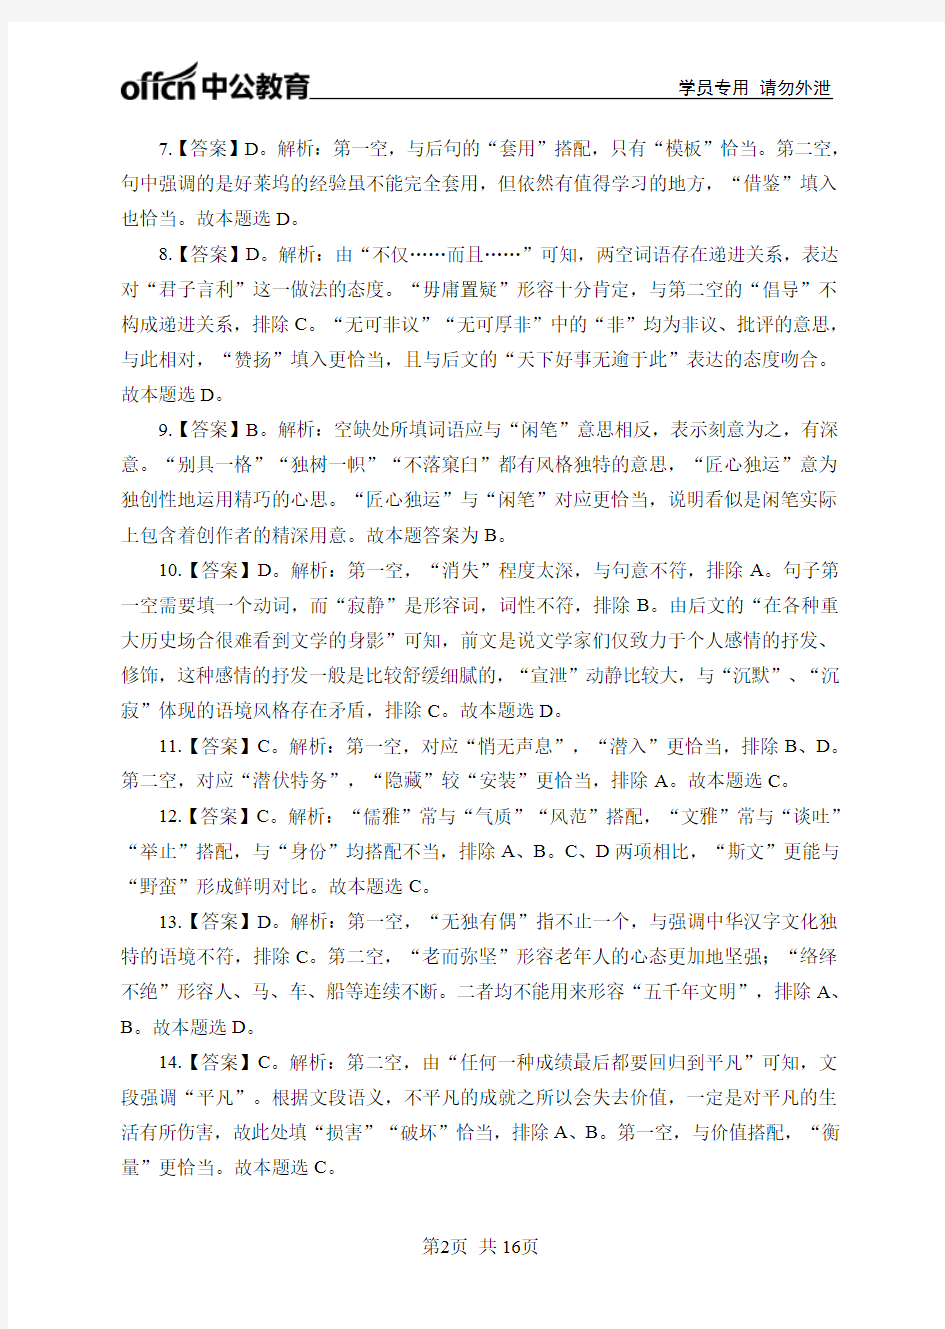 2019年河北省考行测模拟卷模拟卷(一)答案与解析